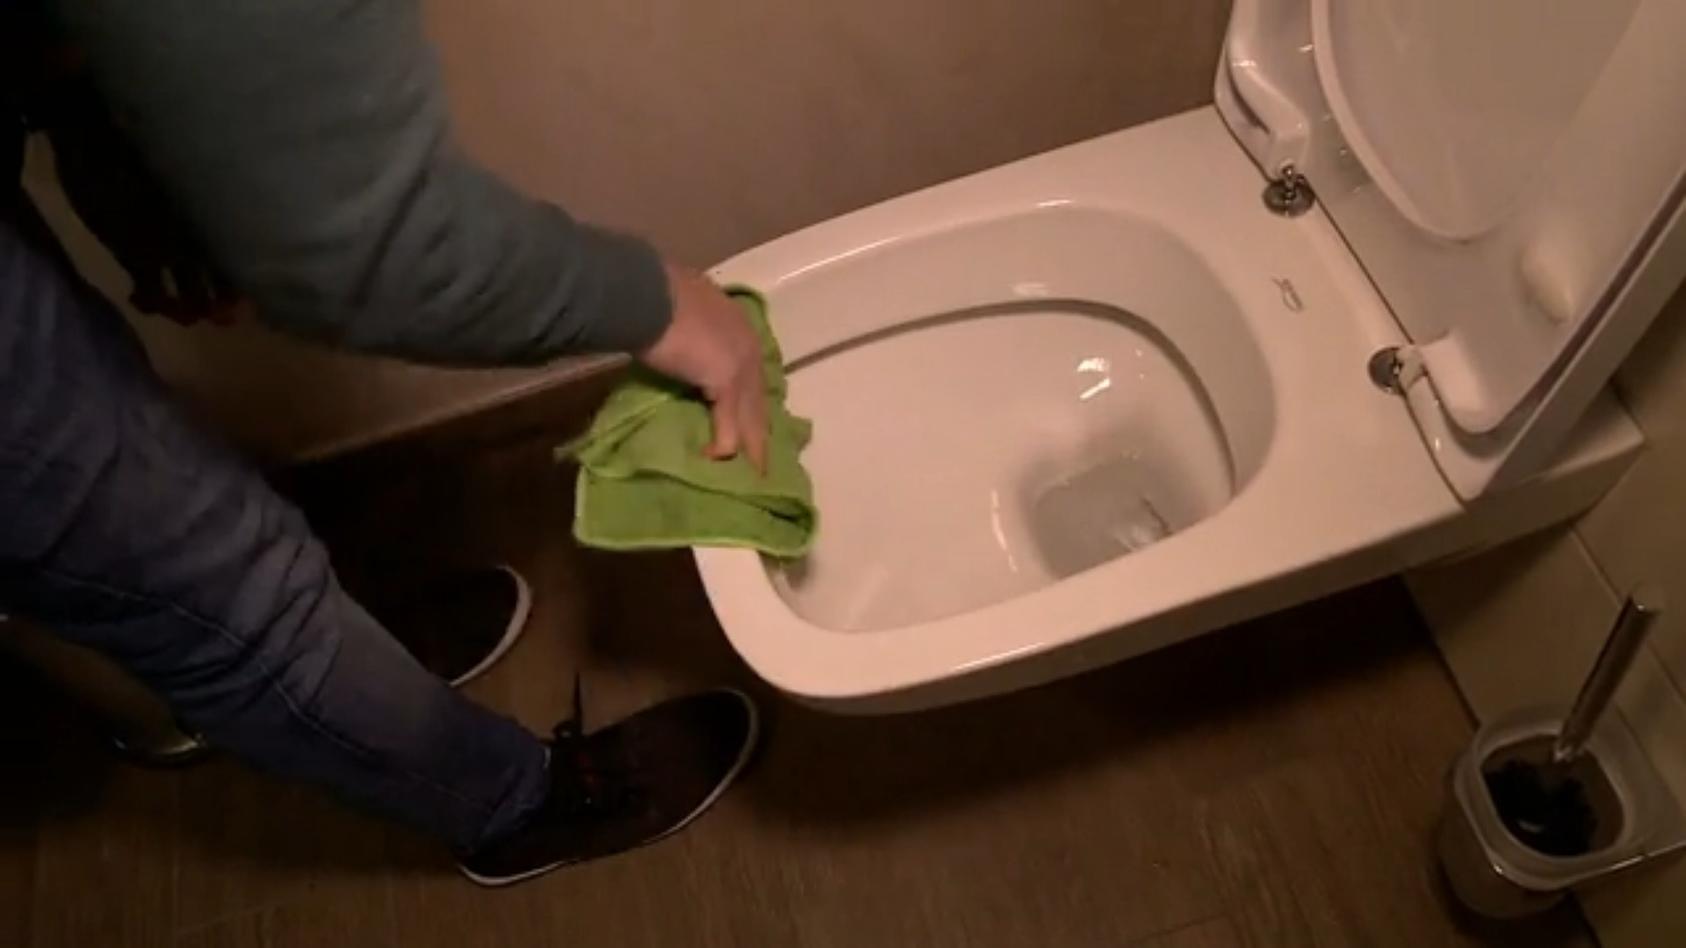 Schule sammelt Geld für saubere Toiletten Griff ins Klo?